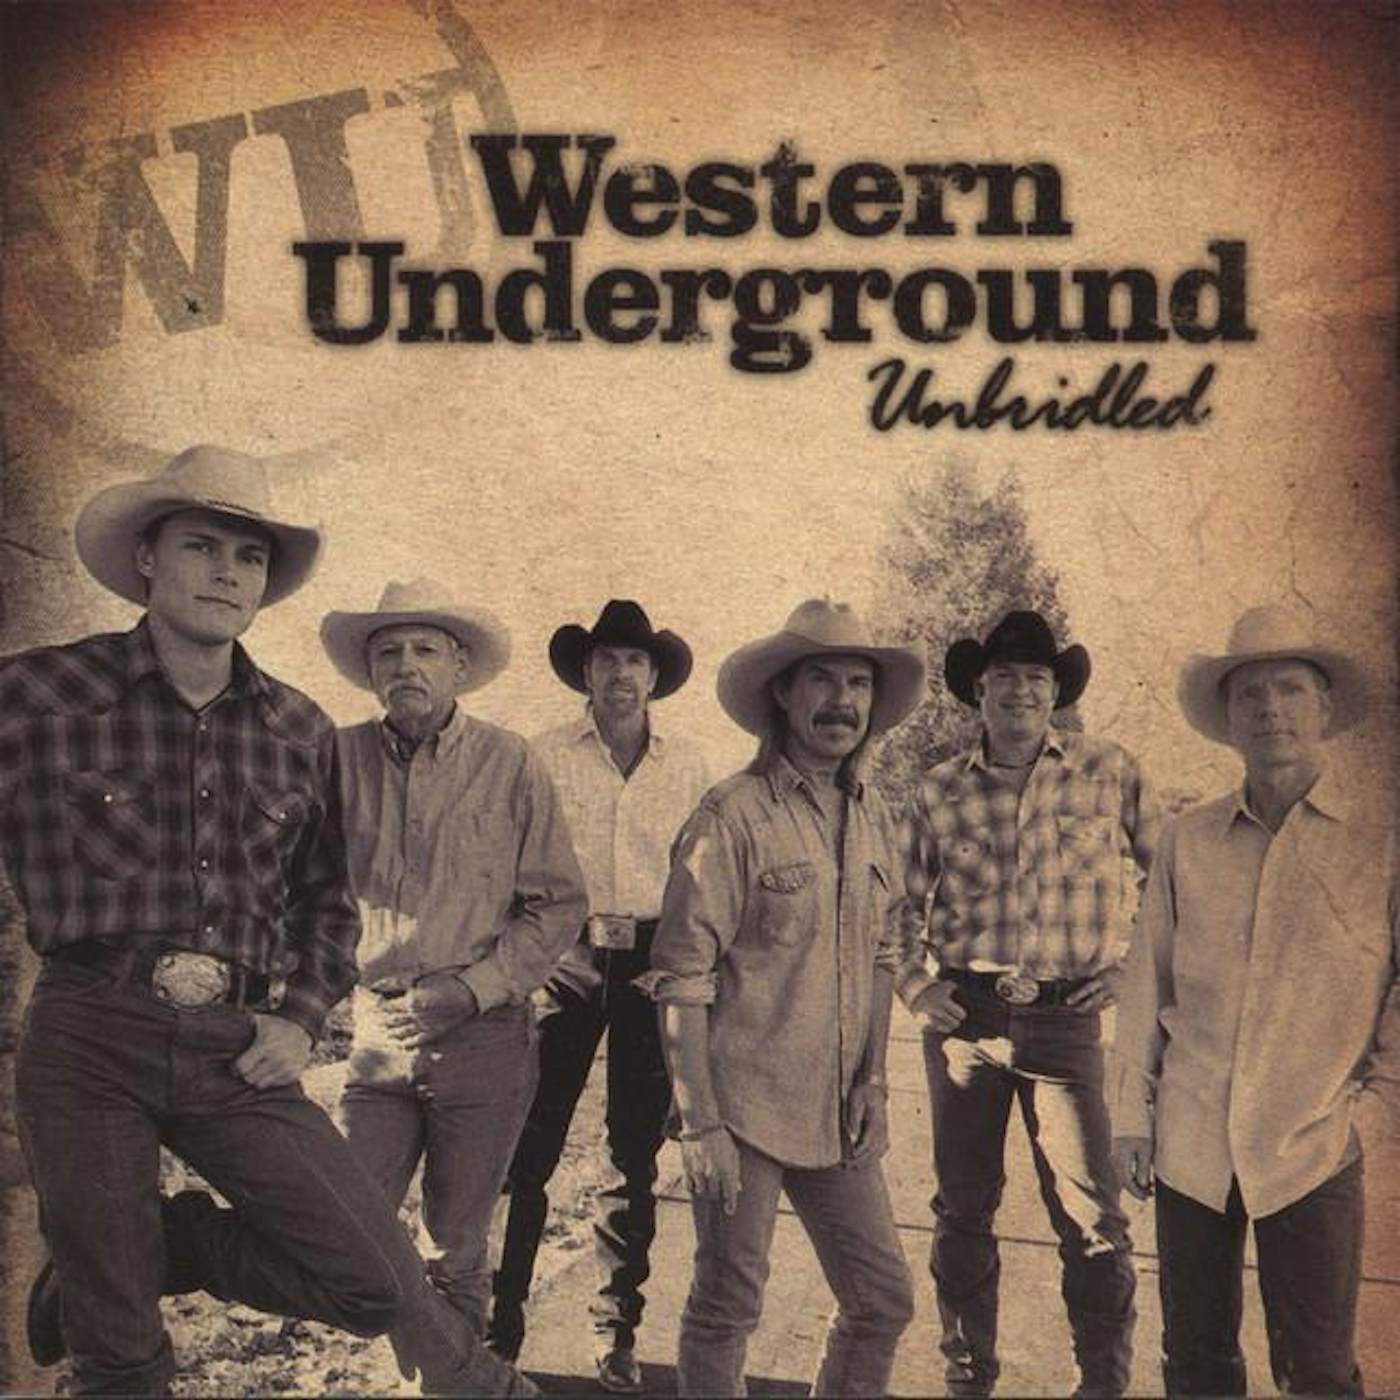 Western Underground